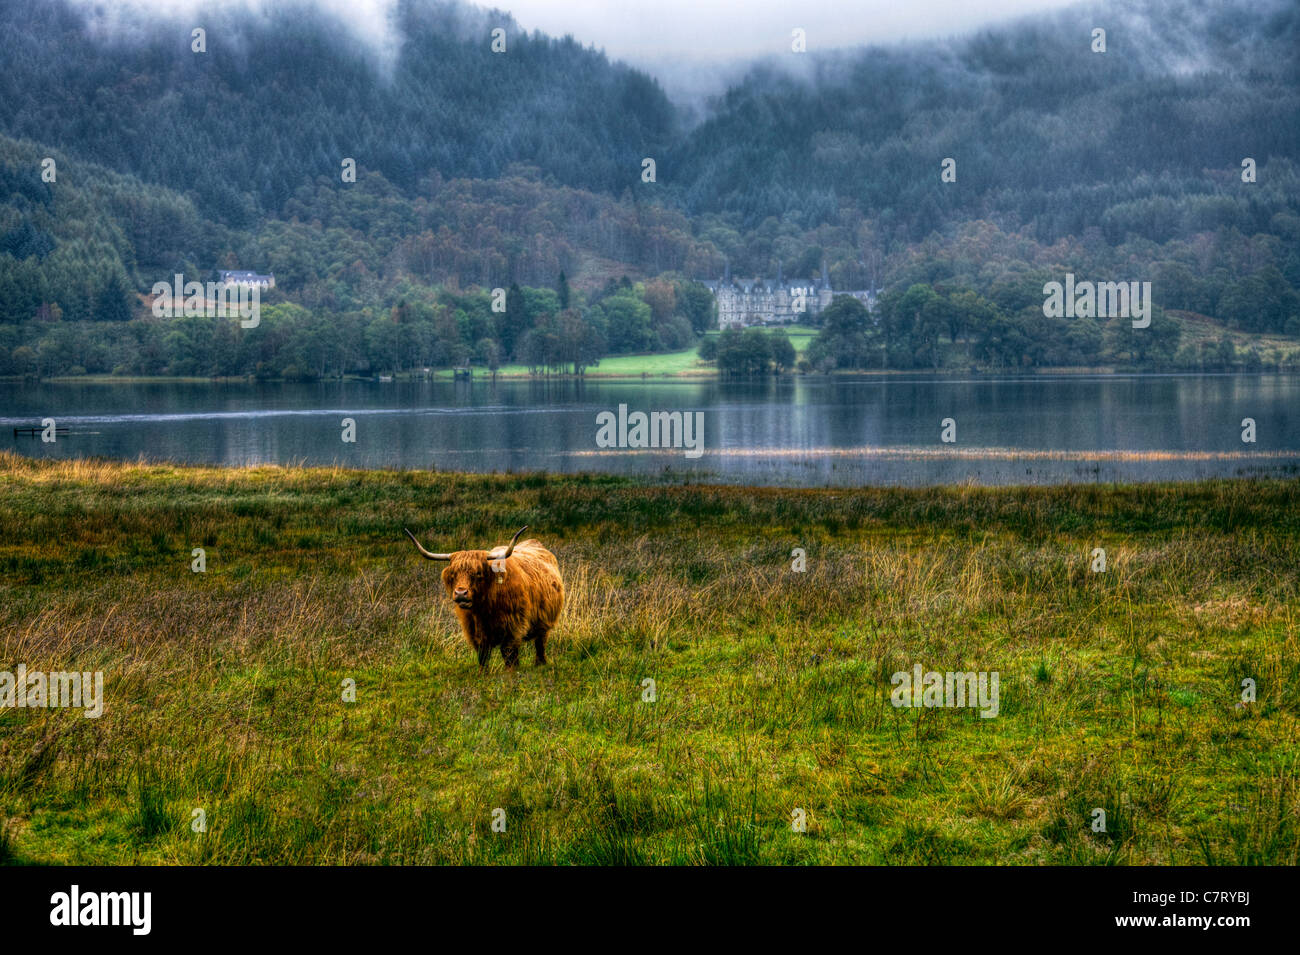 Iconico highland long horn cow nella parte anteriore del Loch Arklet Trossachs, Scozia, simbolo scozzese Foto Stock